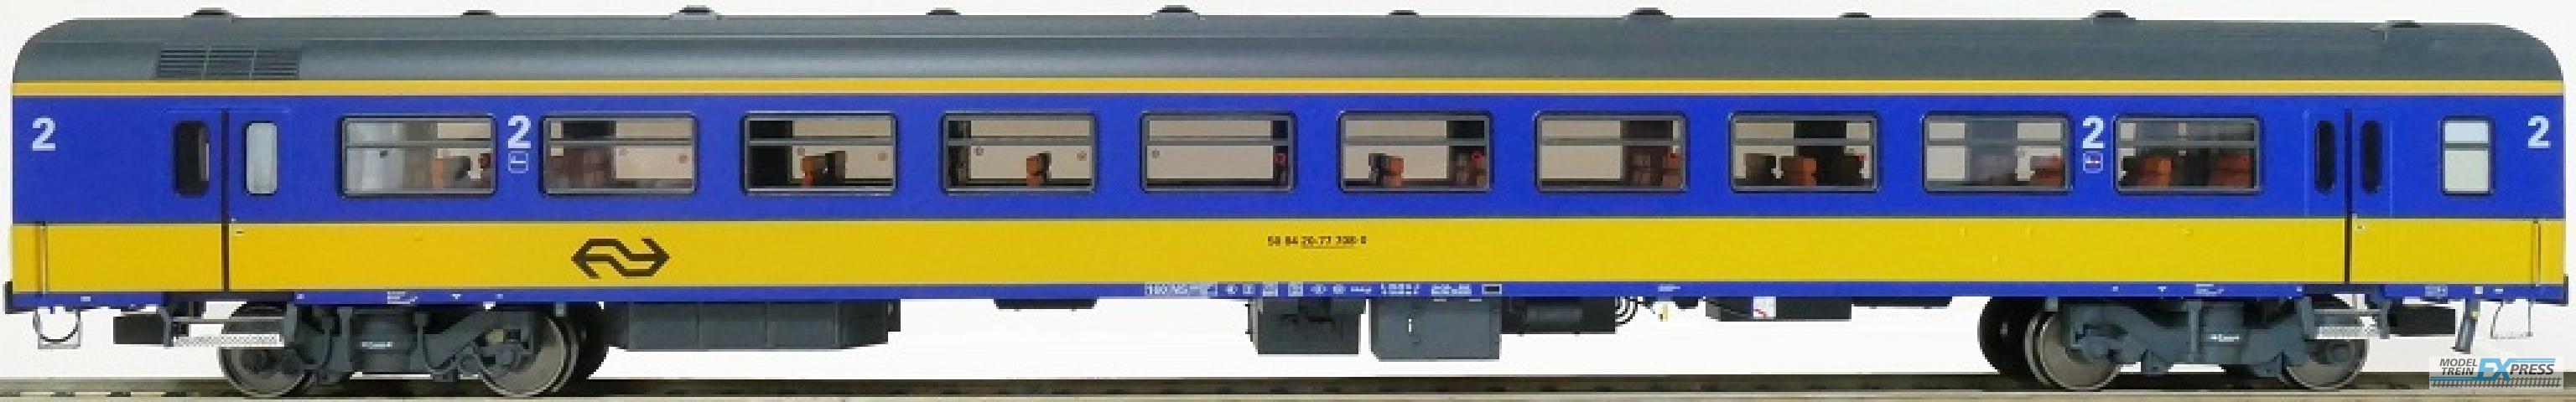 Exact-train 11043 NS ICR (Originalversion) für den Inlandseinsatz Reisezugwagen B (Farbe Gelb / Blau), Ep. IV